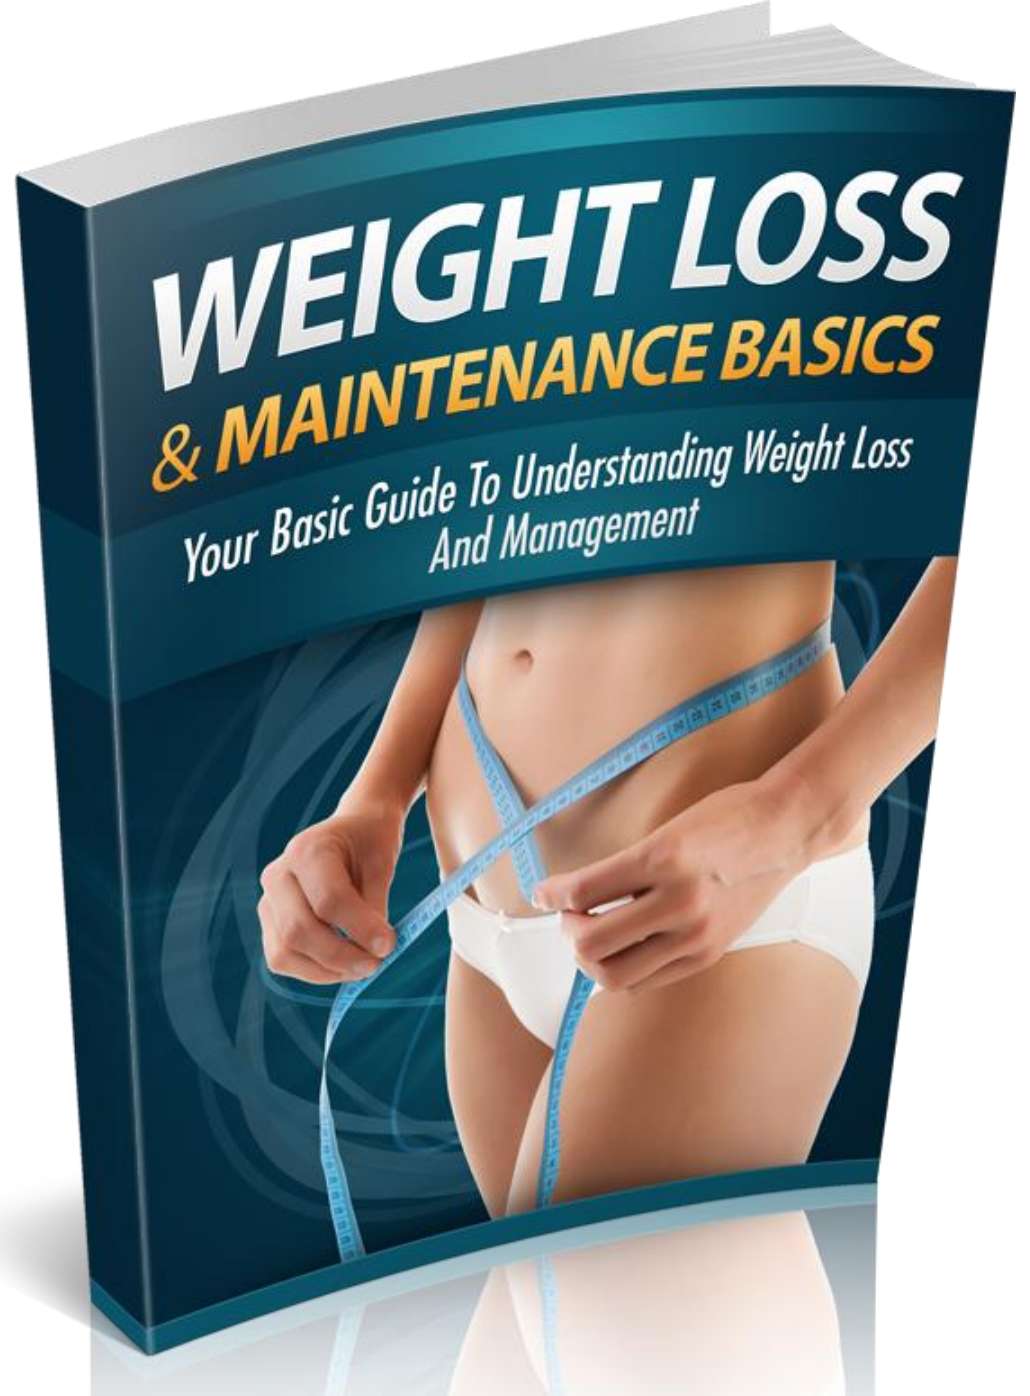 Weight Loss & Maintenance Basics